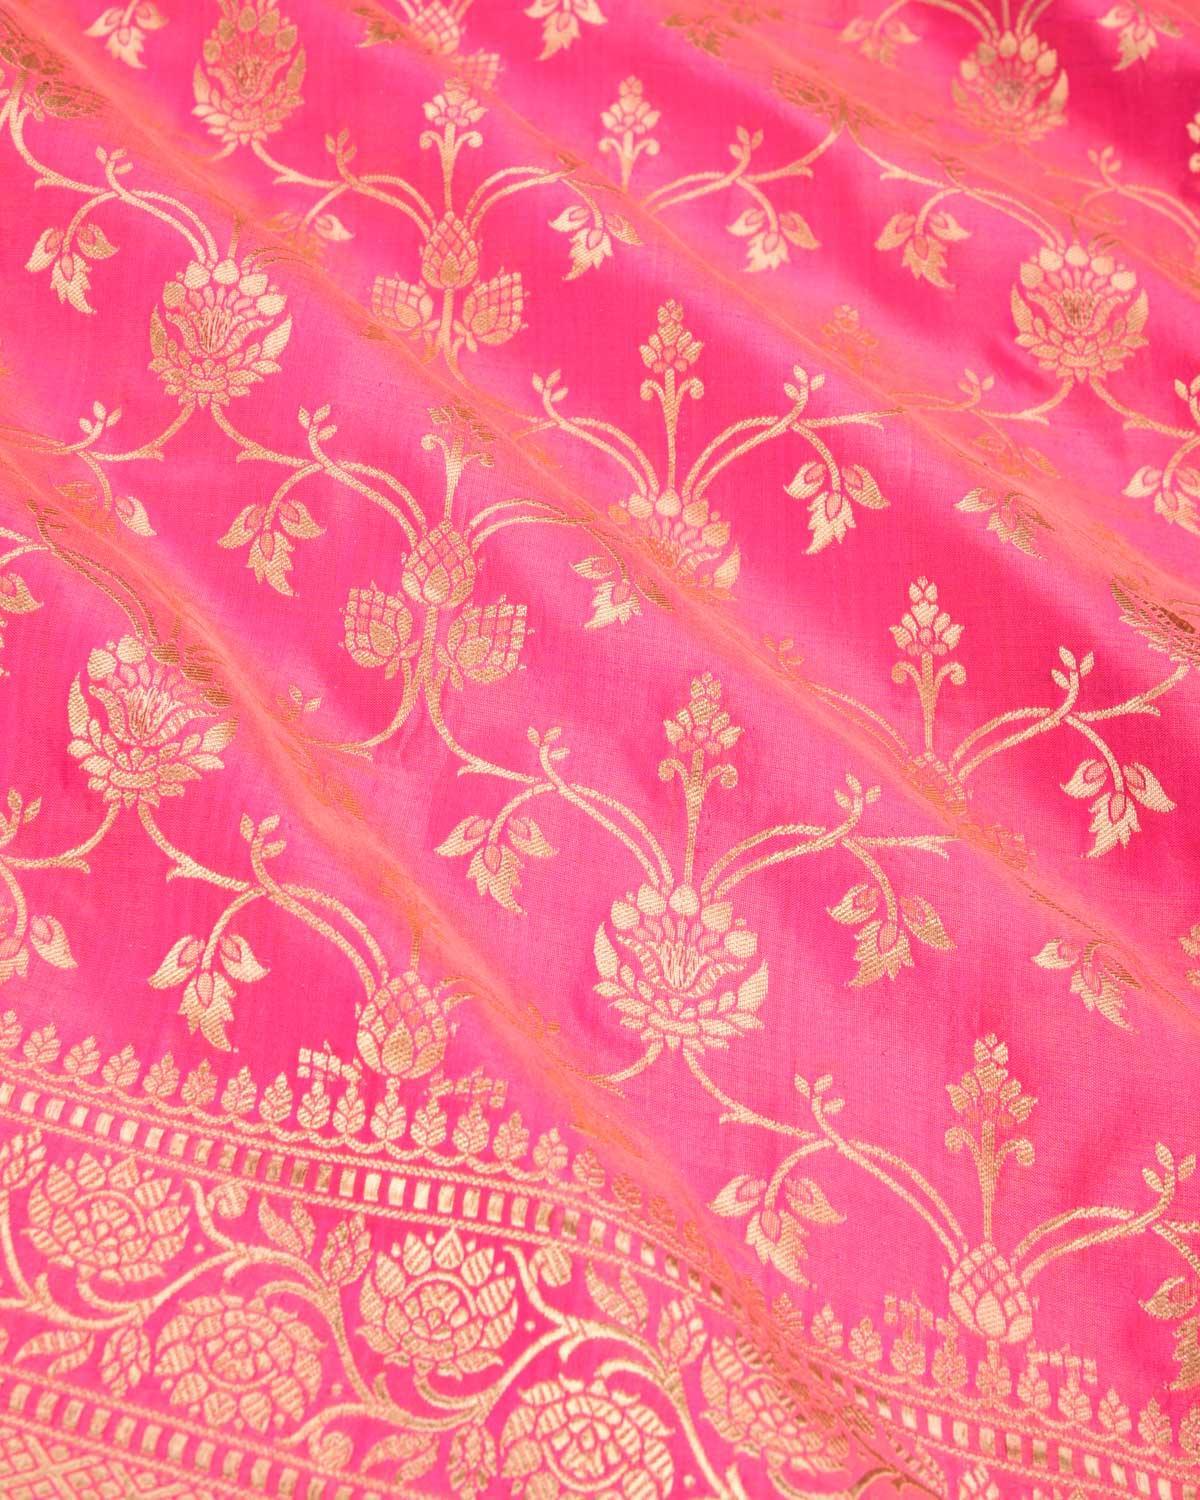 Pink Banarasi Floral Jaal Gold Zari Cutwork Brocade Handwoven Katan Silk Saree - By HolyWeaves, Benares